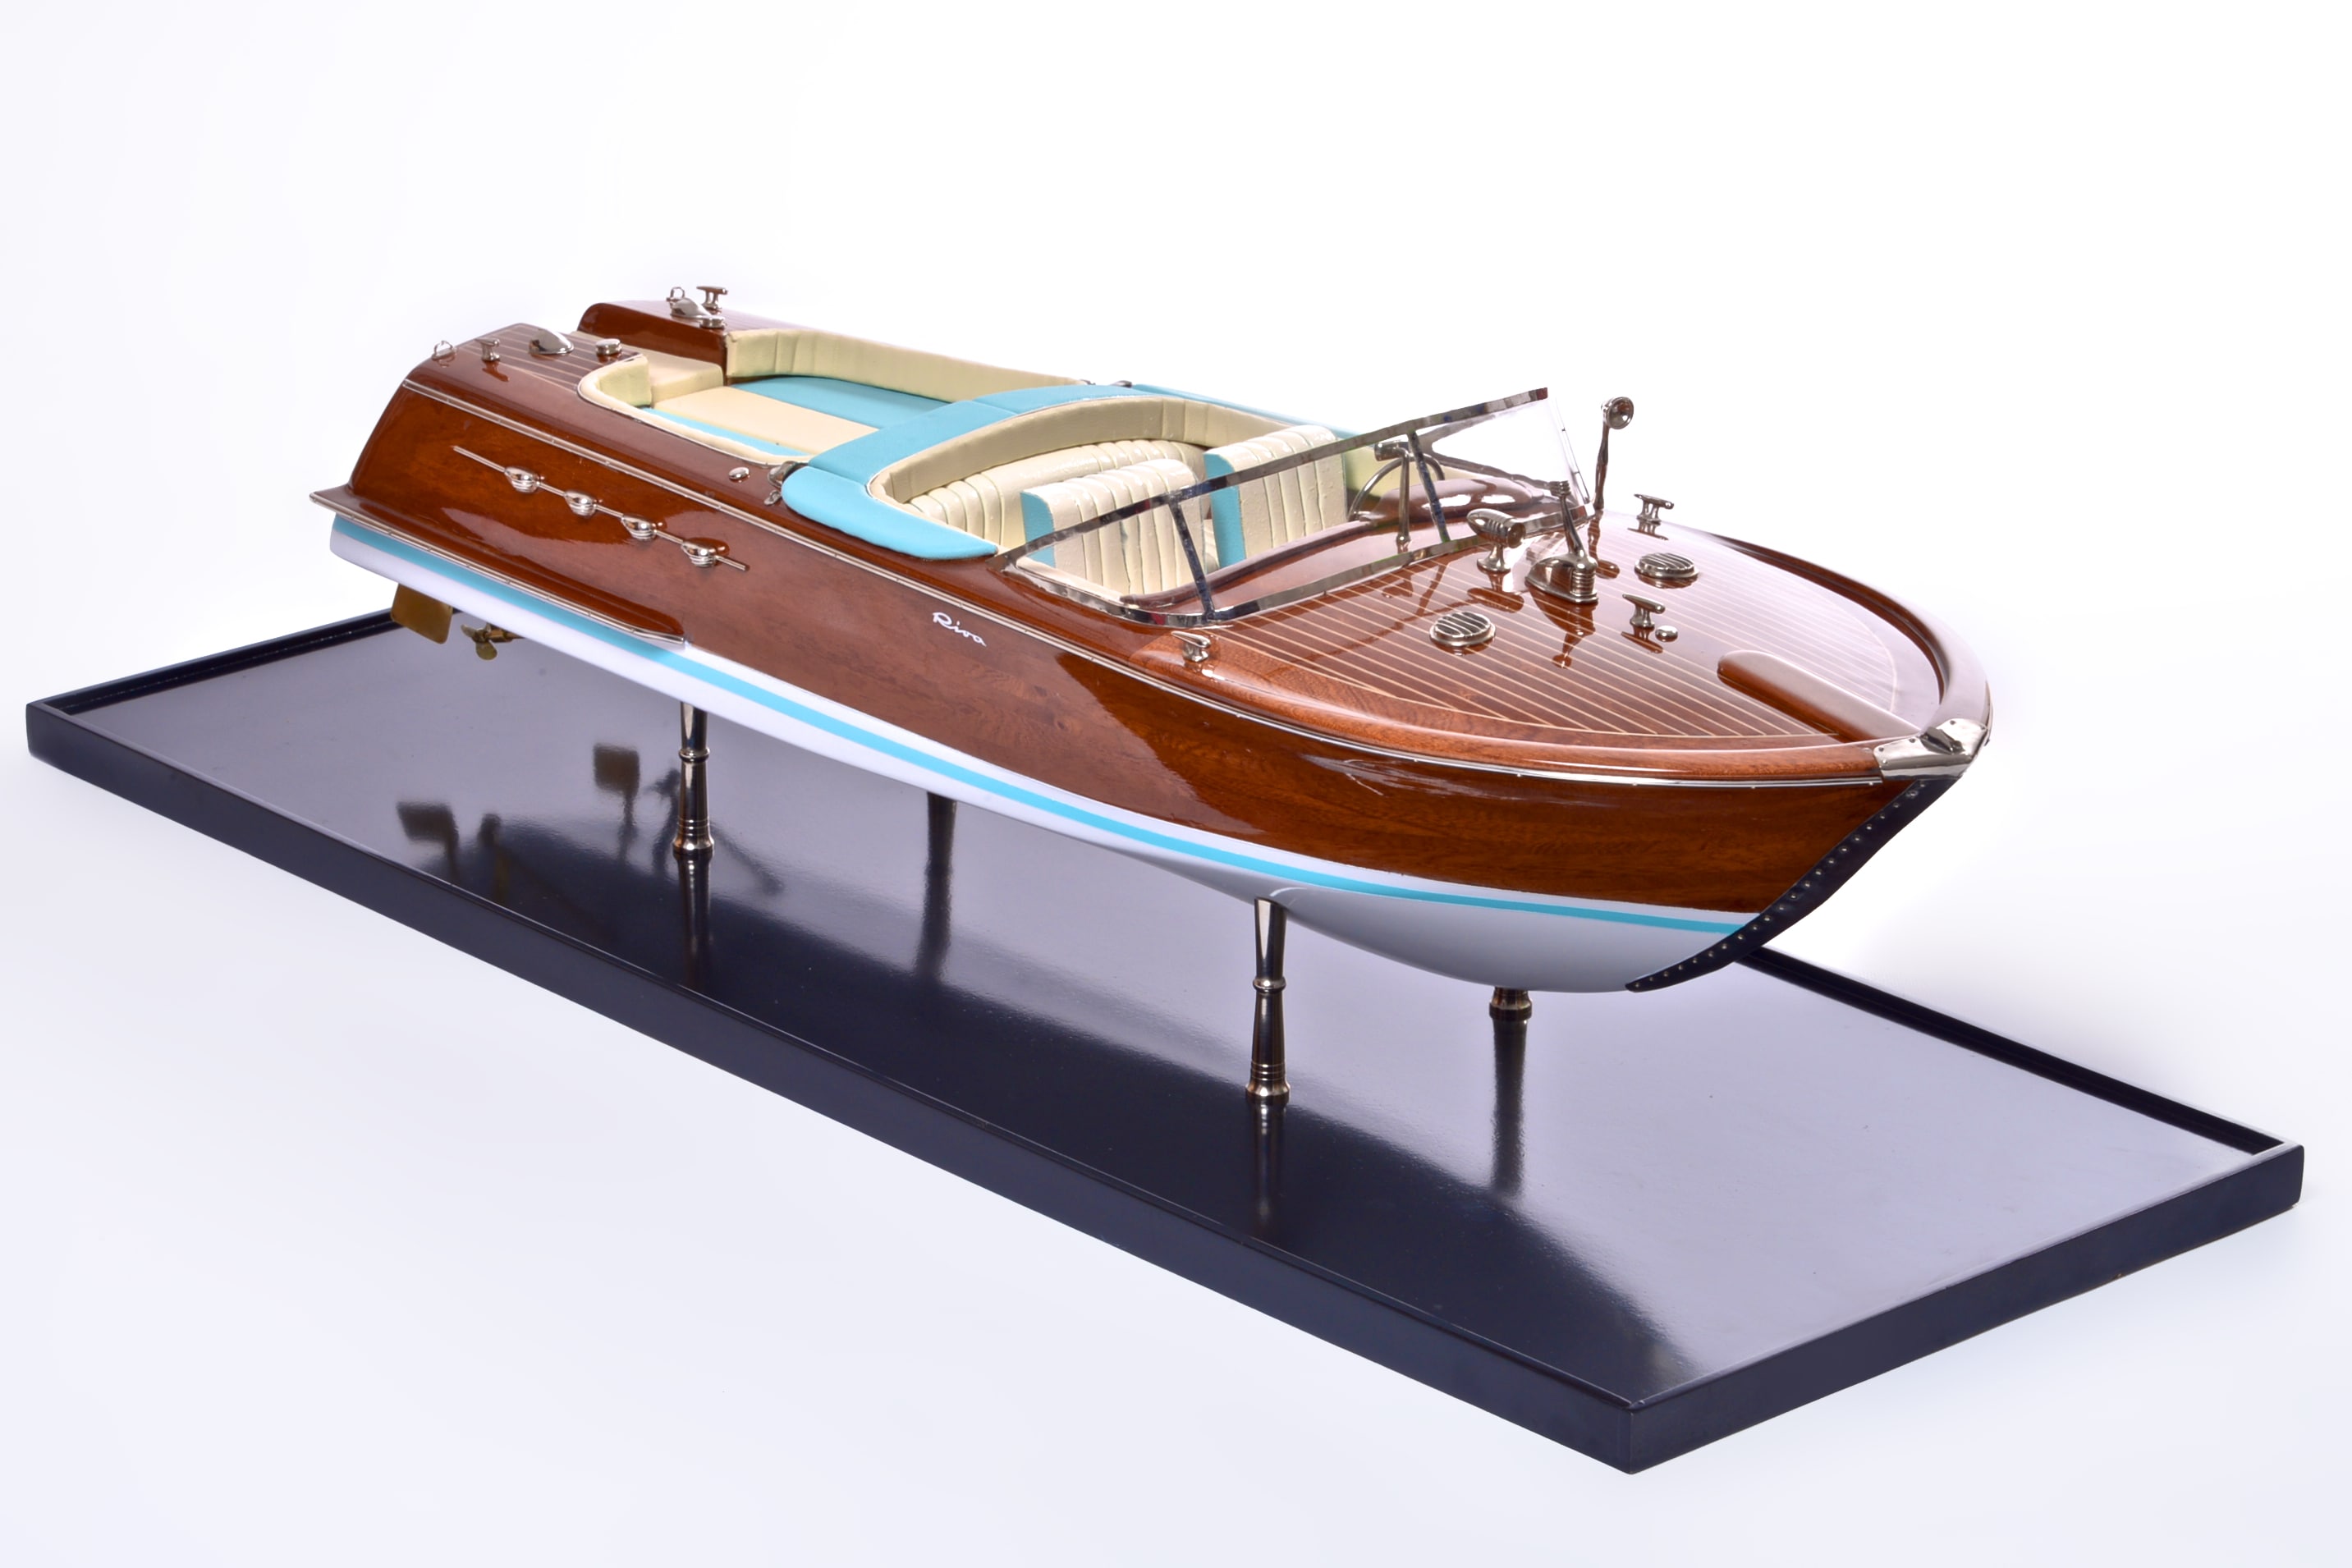 Riva Super Aquarama Model Boat - PSM